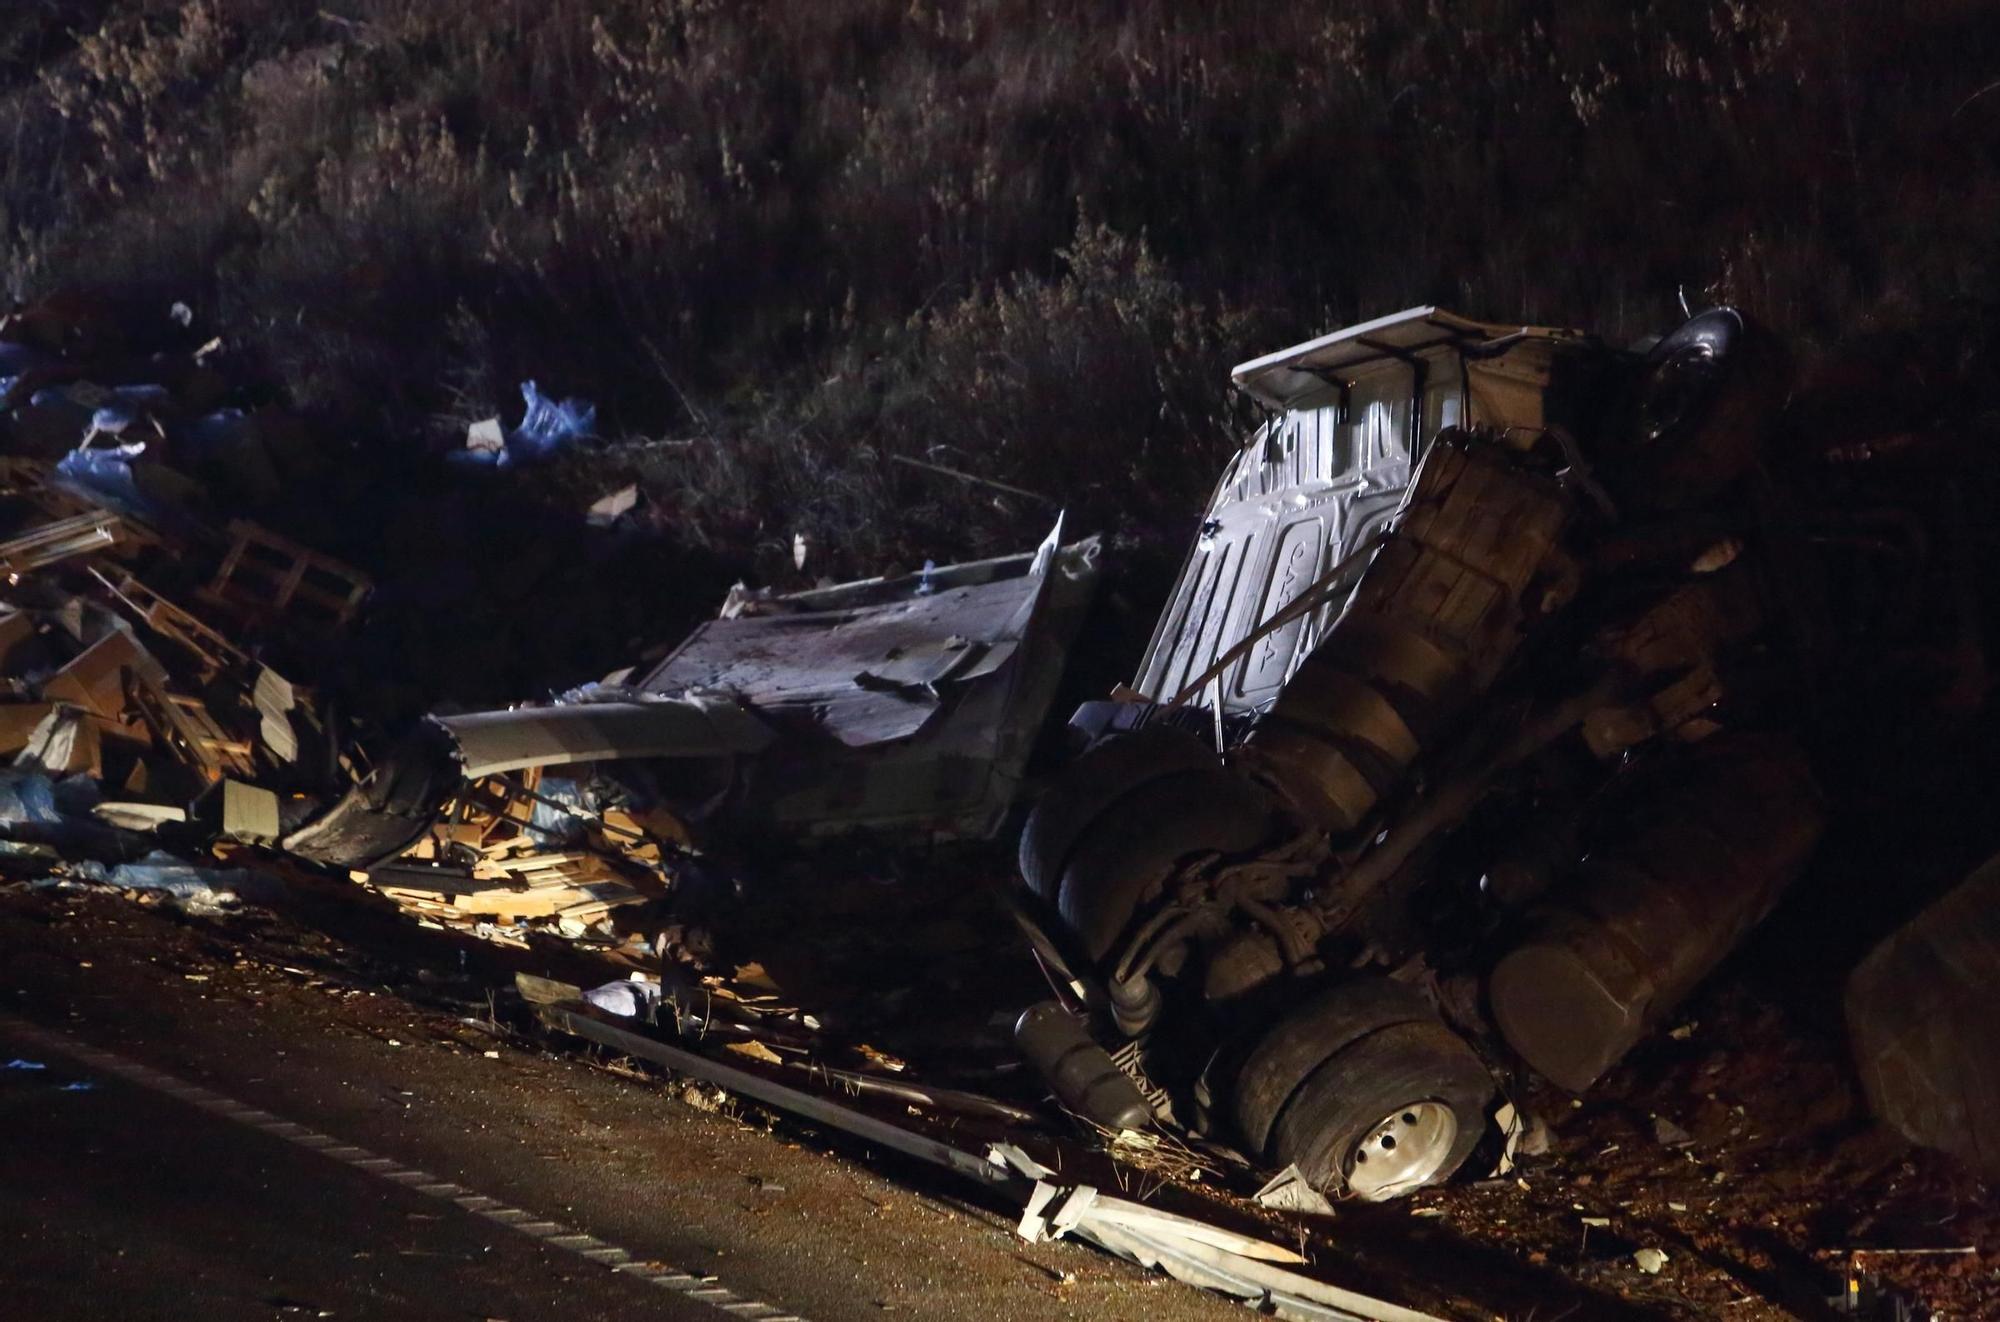 Fallece una persona tras colisionar el turismo que conducía contra un camión en la A-6 en Camponaraya (León)